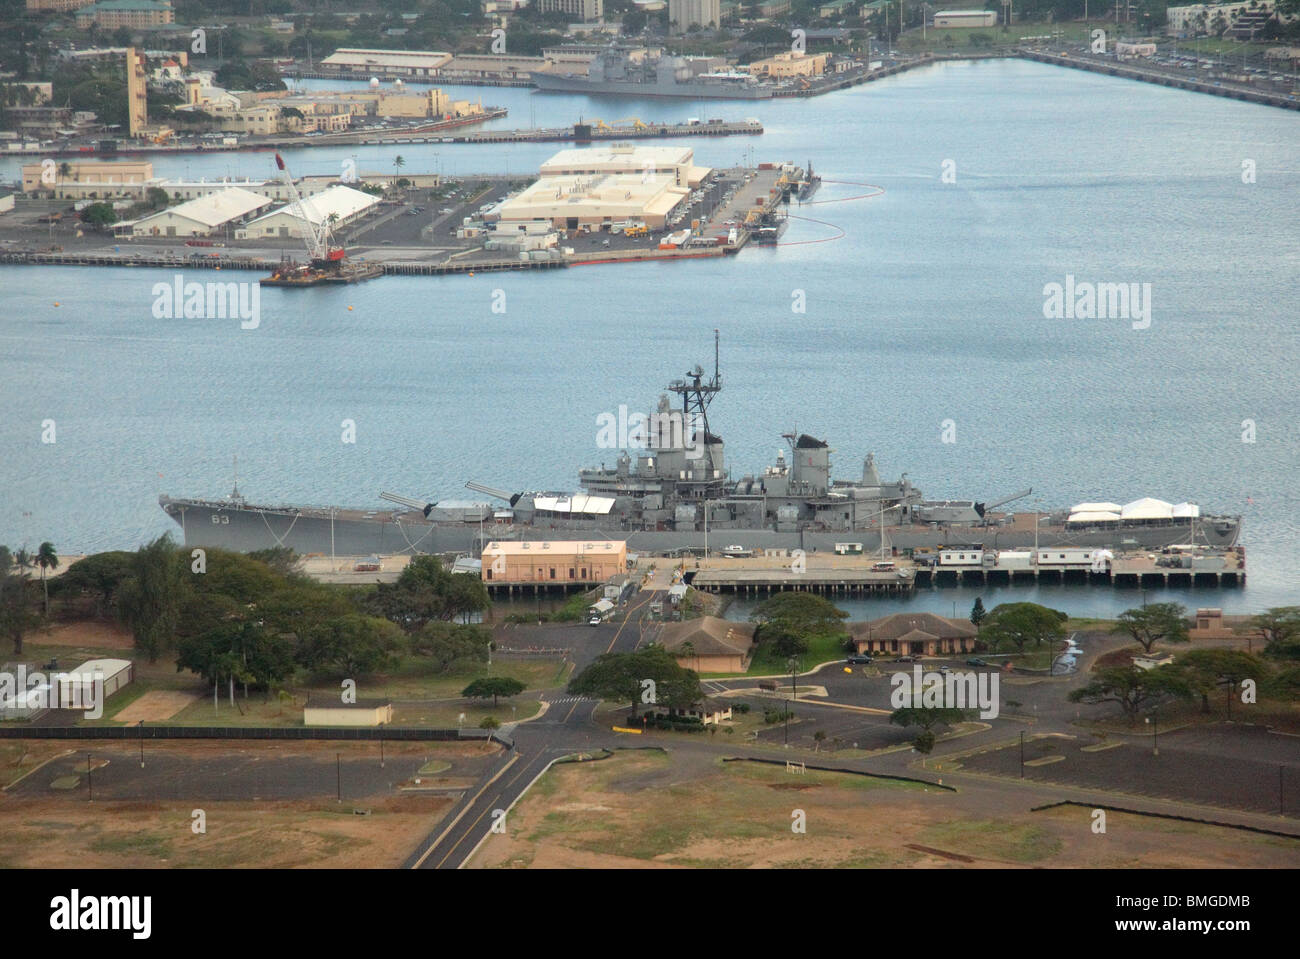 Vue aérienne du cuirassé USS Missouri à Pearl Harbor. Oahu, Hawaii Banque D'Images